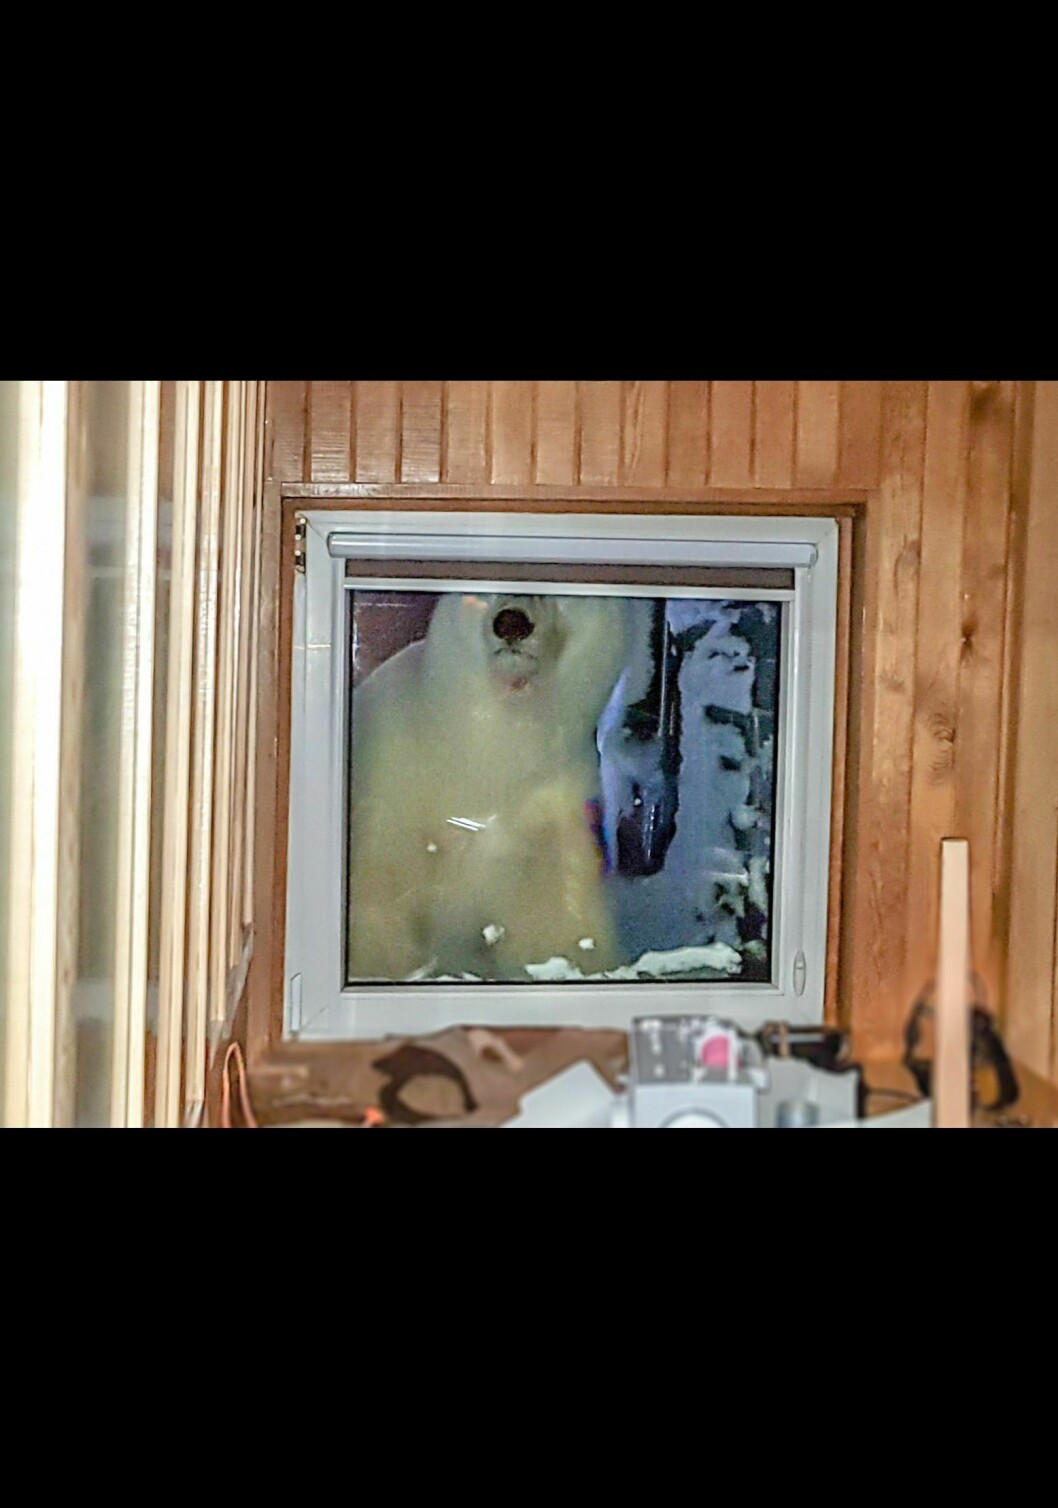 Isbjørnbesøket fikk fatale konsekvenser for en hund, og det er en tydelig preget forsker Svalbardposten snakker med. Under haken og på venstre skulder ser man at bjørnen har blodspor fra angrepet.